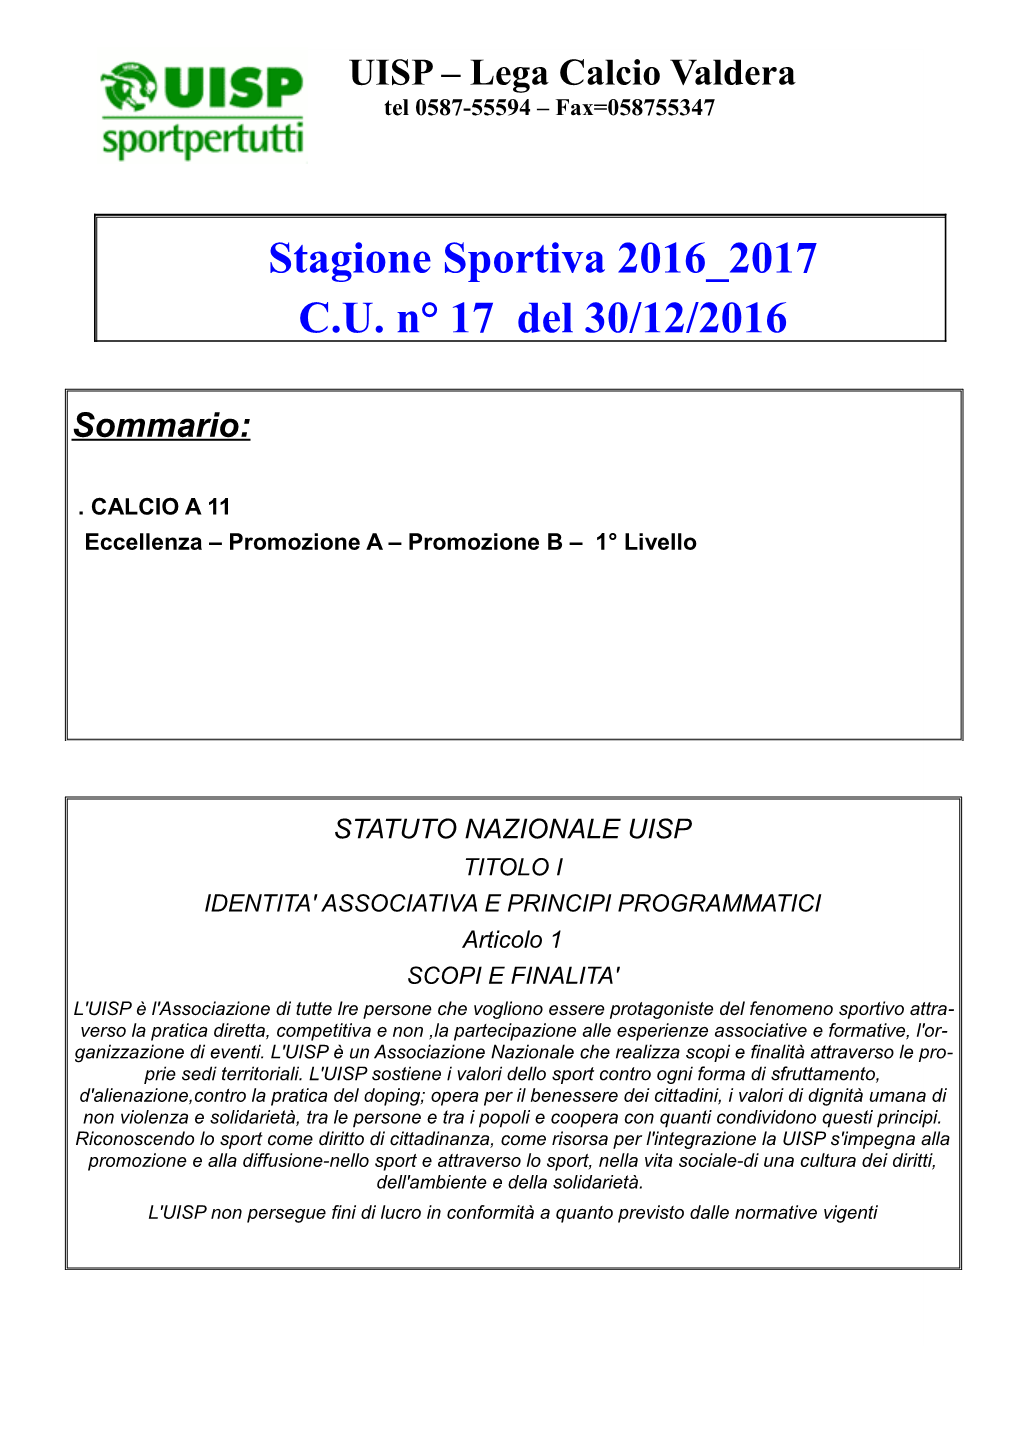 Stagione Sportiva 2016 2017 C.U. N° 17 Del 30/12/2016